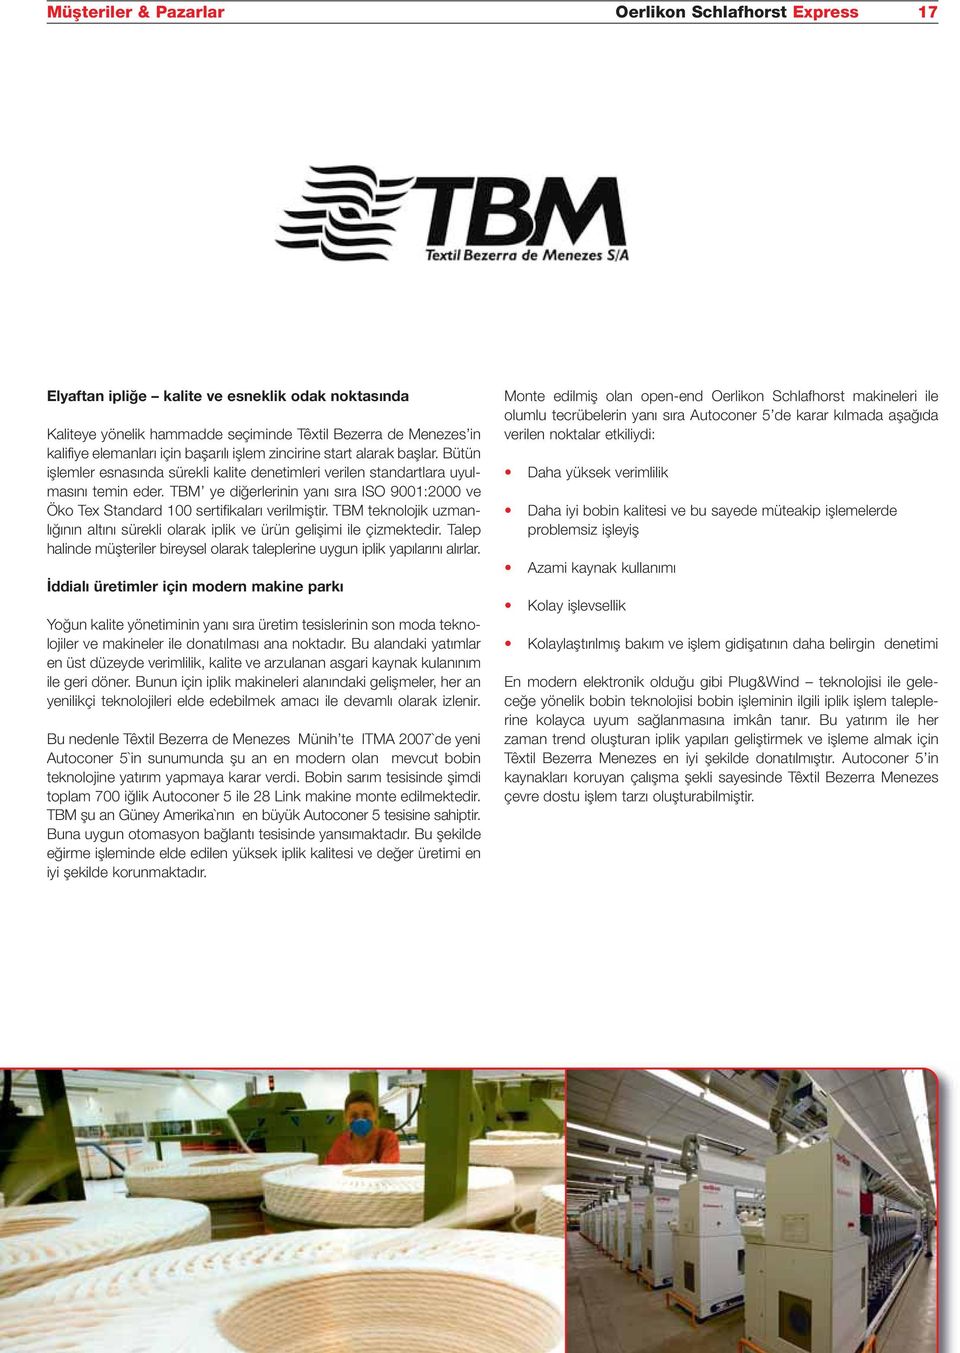 TBM ye diğerlerinin yanı sıra ISO 9001:2000 ve Öko Tex Standard 100 sertifikaları verilmiştir. TBM teknolojik uzmanlığının altını sürekli olarak iplik ve ürün gelişimi ile çizmektedir.